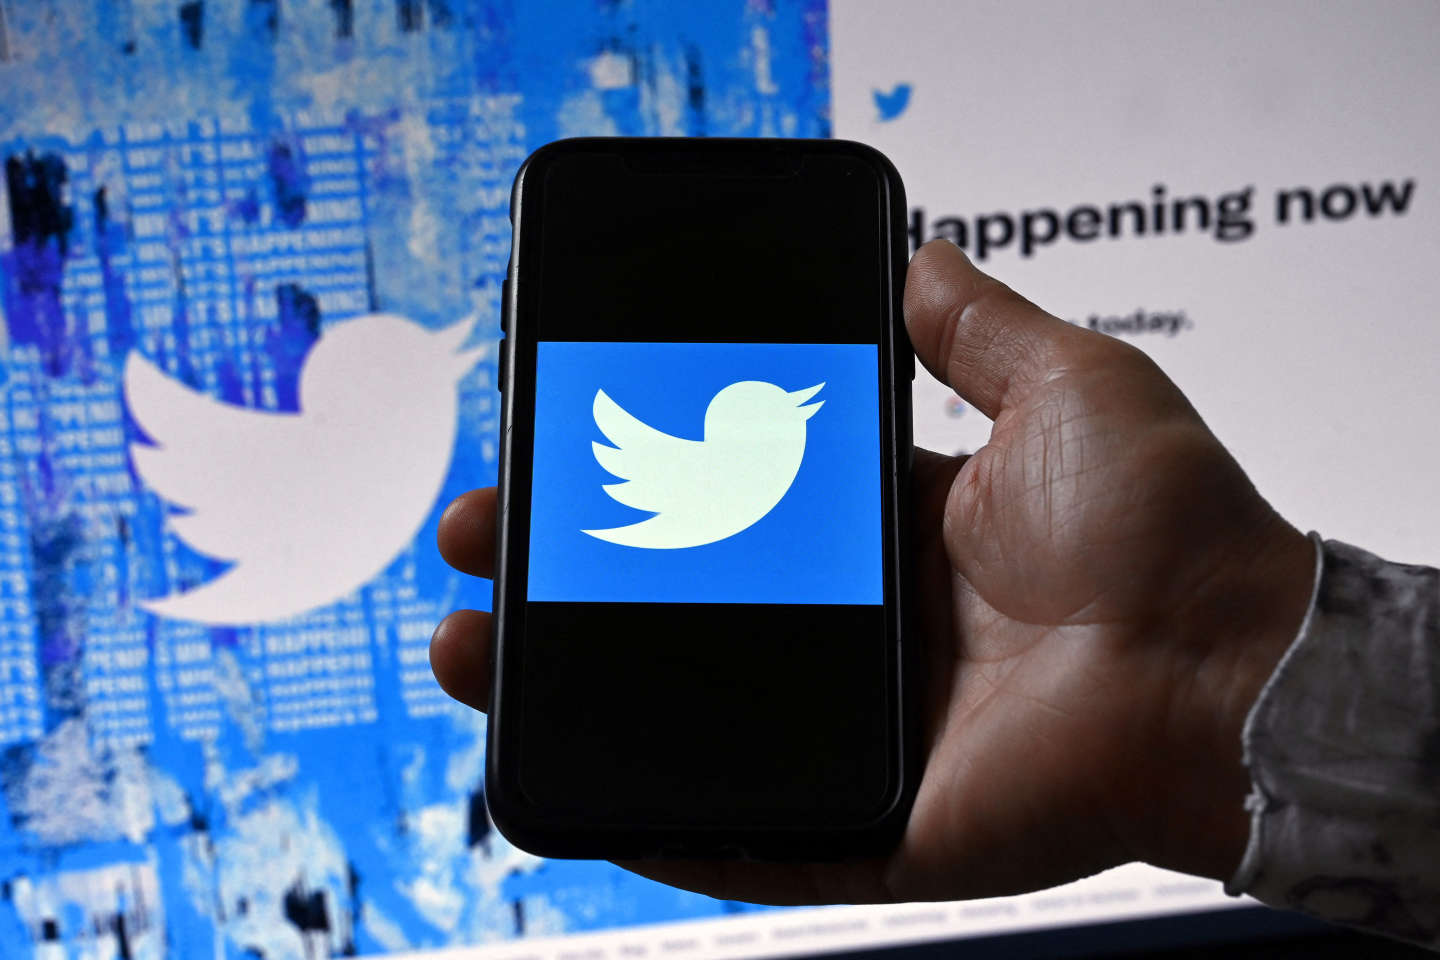 Un lanceur d’alerte accuse Twitter de défaillances « extrêmes et choquantes » en matière de sécurité